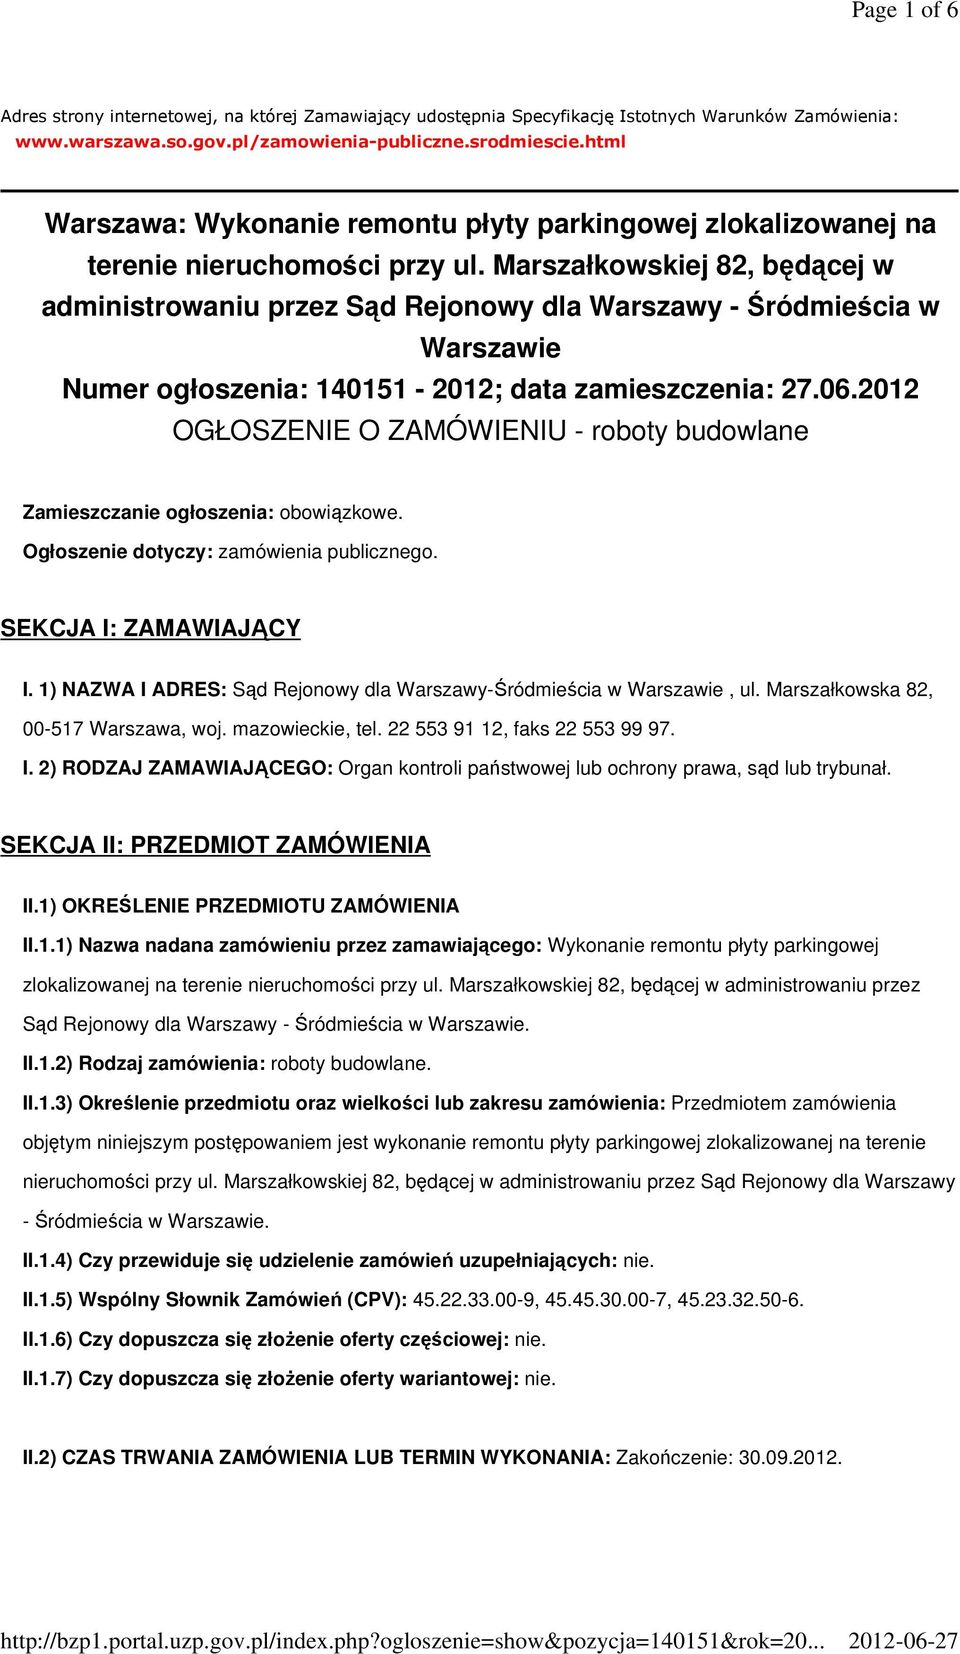 Marszałkowskiej 82, będącej w administrowaniu przez Sąd Rejonowy dla Warszawy - Śródmieścia w Warszawie Numer ogłoszenia: 140151-2012; data zamieszczenia: 27.06.